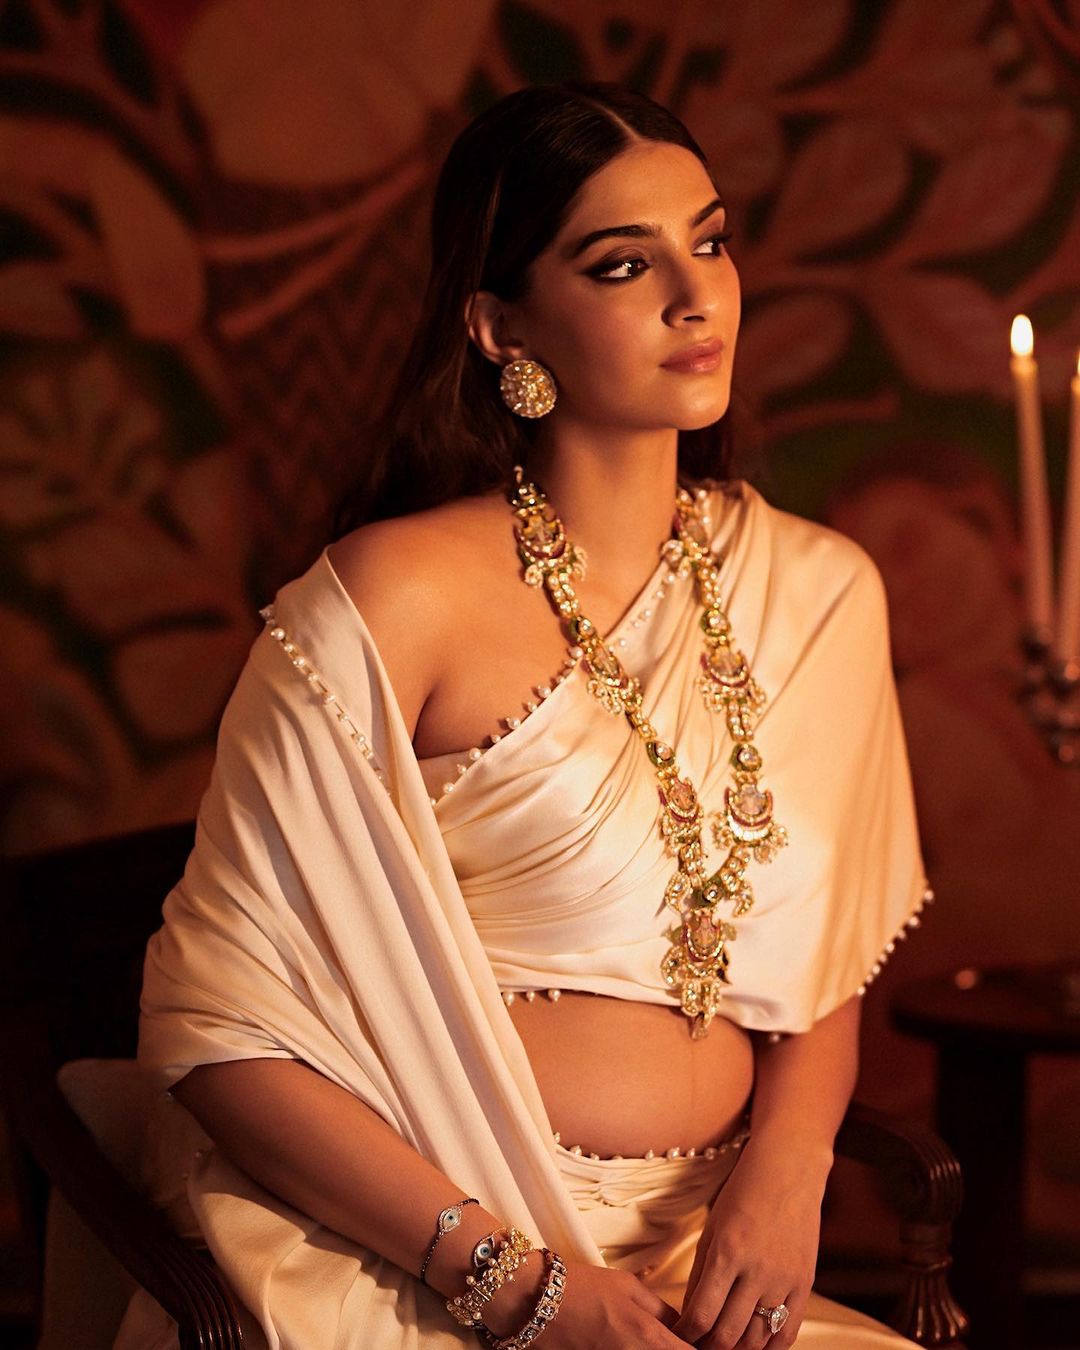 Sonam Kapoor pairs the Abu Jani-Sandeep Khosla saree with Sunita Kapoor jewellery